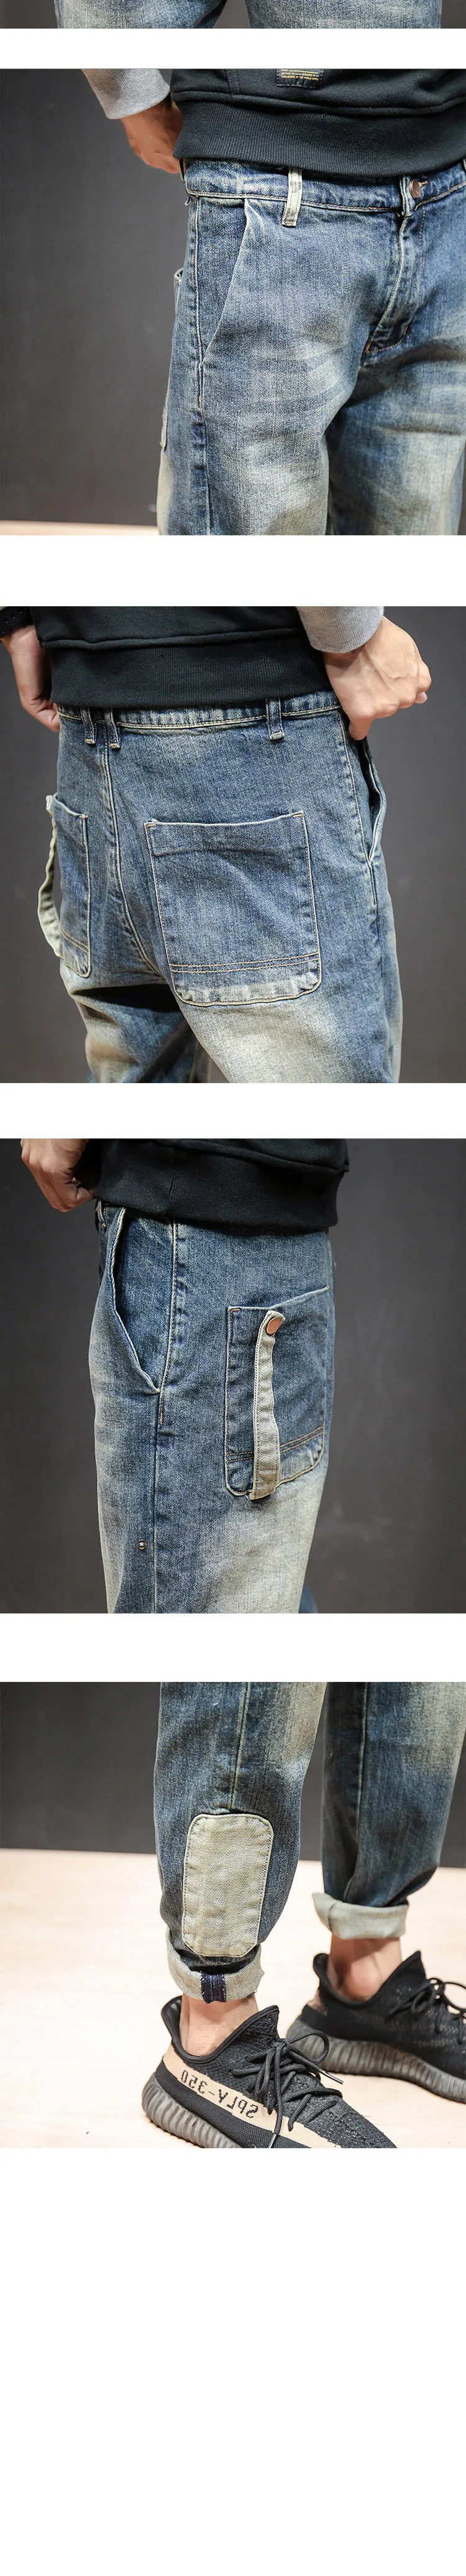 Для мужчин s джинсы потертые джинсы Jogger большой карман хип-хоп свободные джинсовые штаны-шаровары в стиле ретро синий эластичные джинсы Для мужчин большие размеры 42